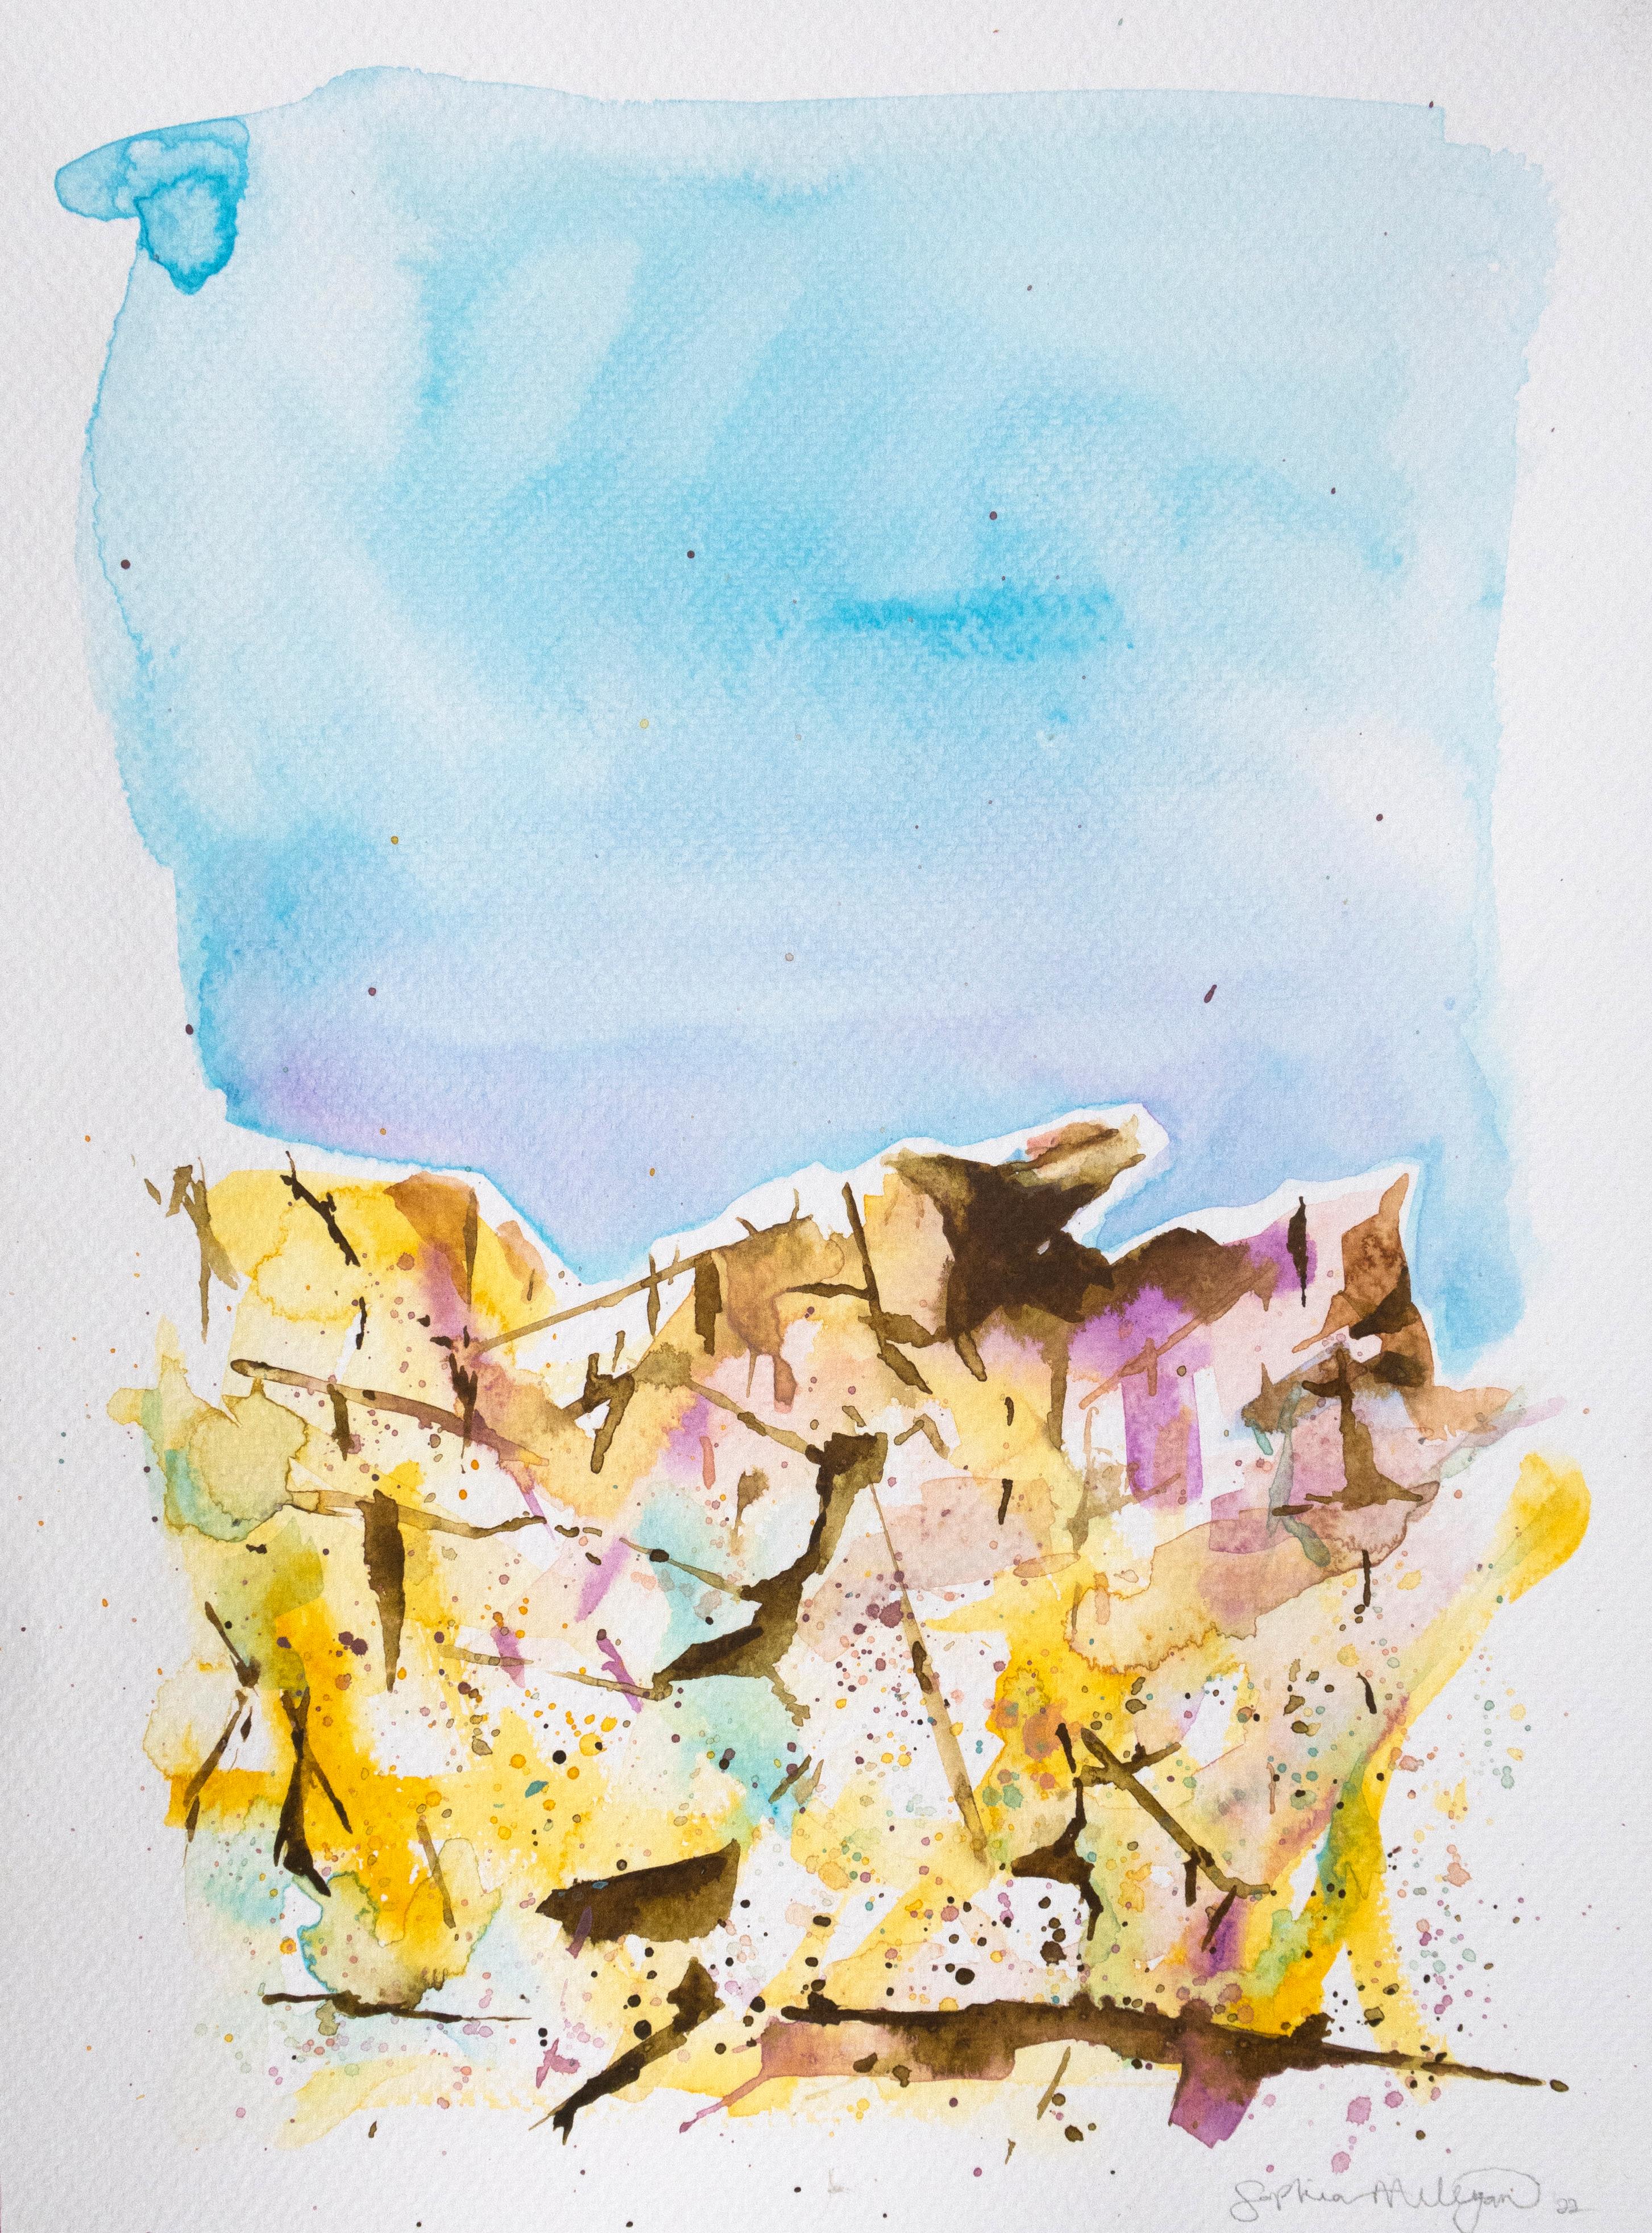 „Prye“ Zeitgenössischer Landschaftsblauer Himmel, gelber Stein, Erde und Luft – Painting von Sophia Milligan